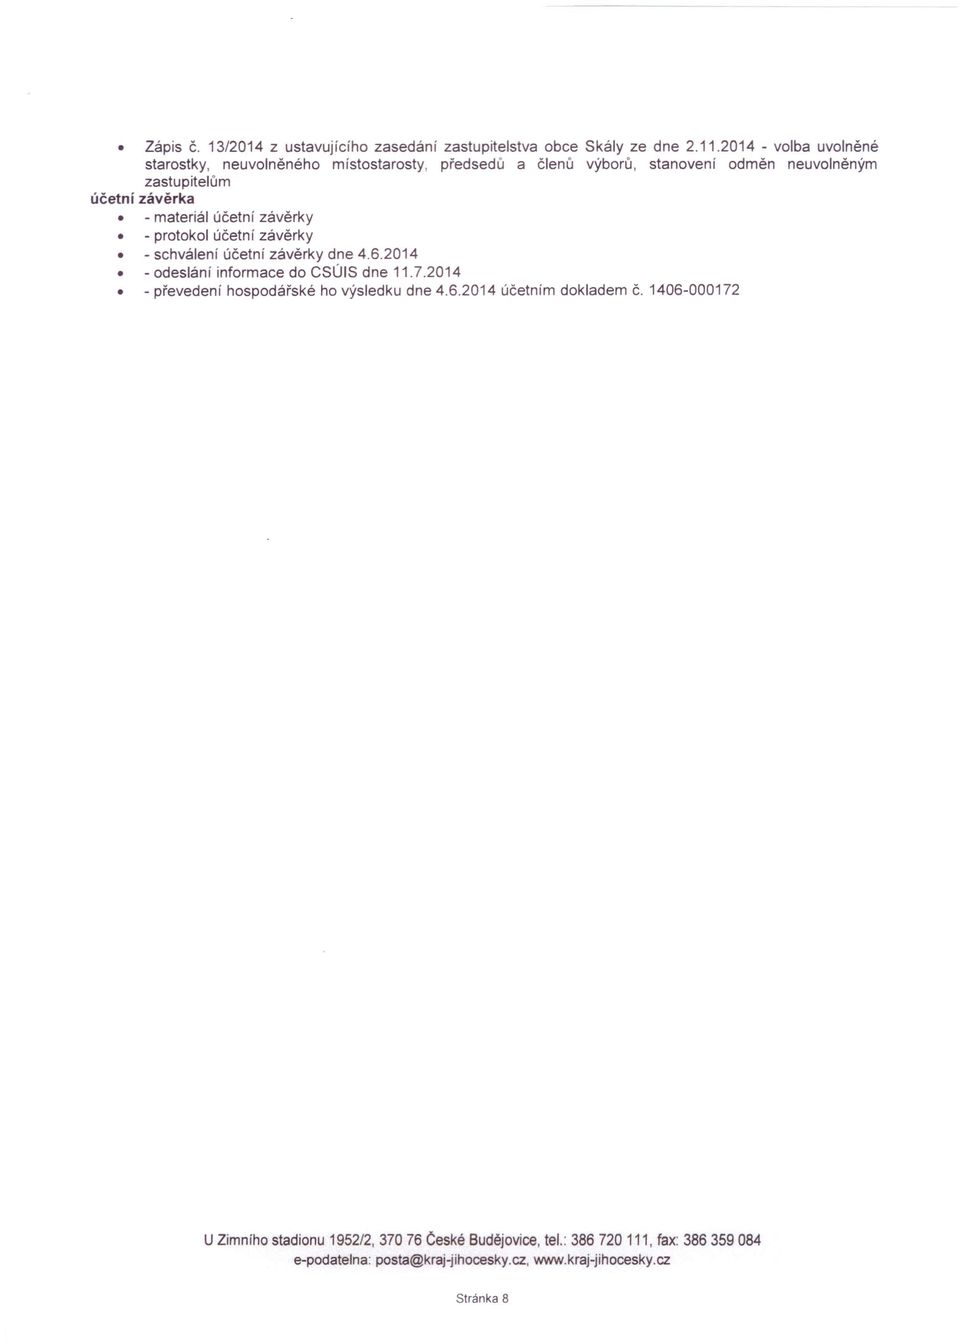 materiál účetní závěrky - protokol účetní závěrky - schválení účetní závěrky dne 4.6.2014 - odeslání informace do CSÚIS dne 11.7.